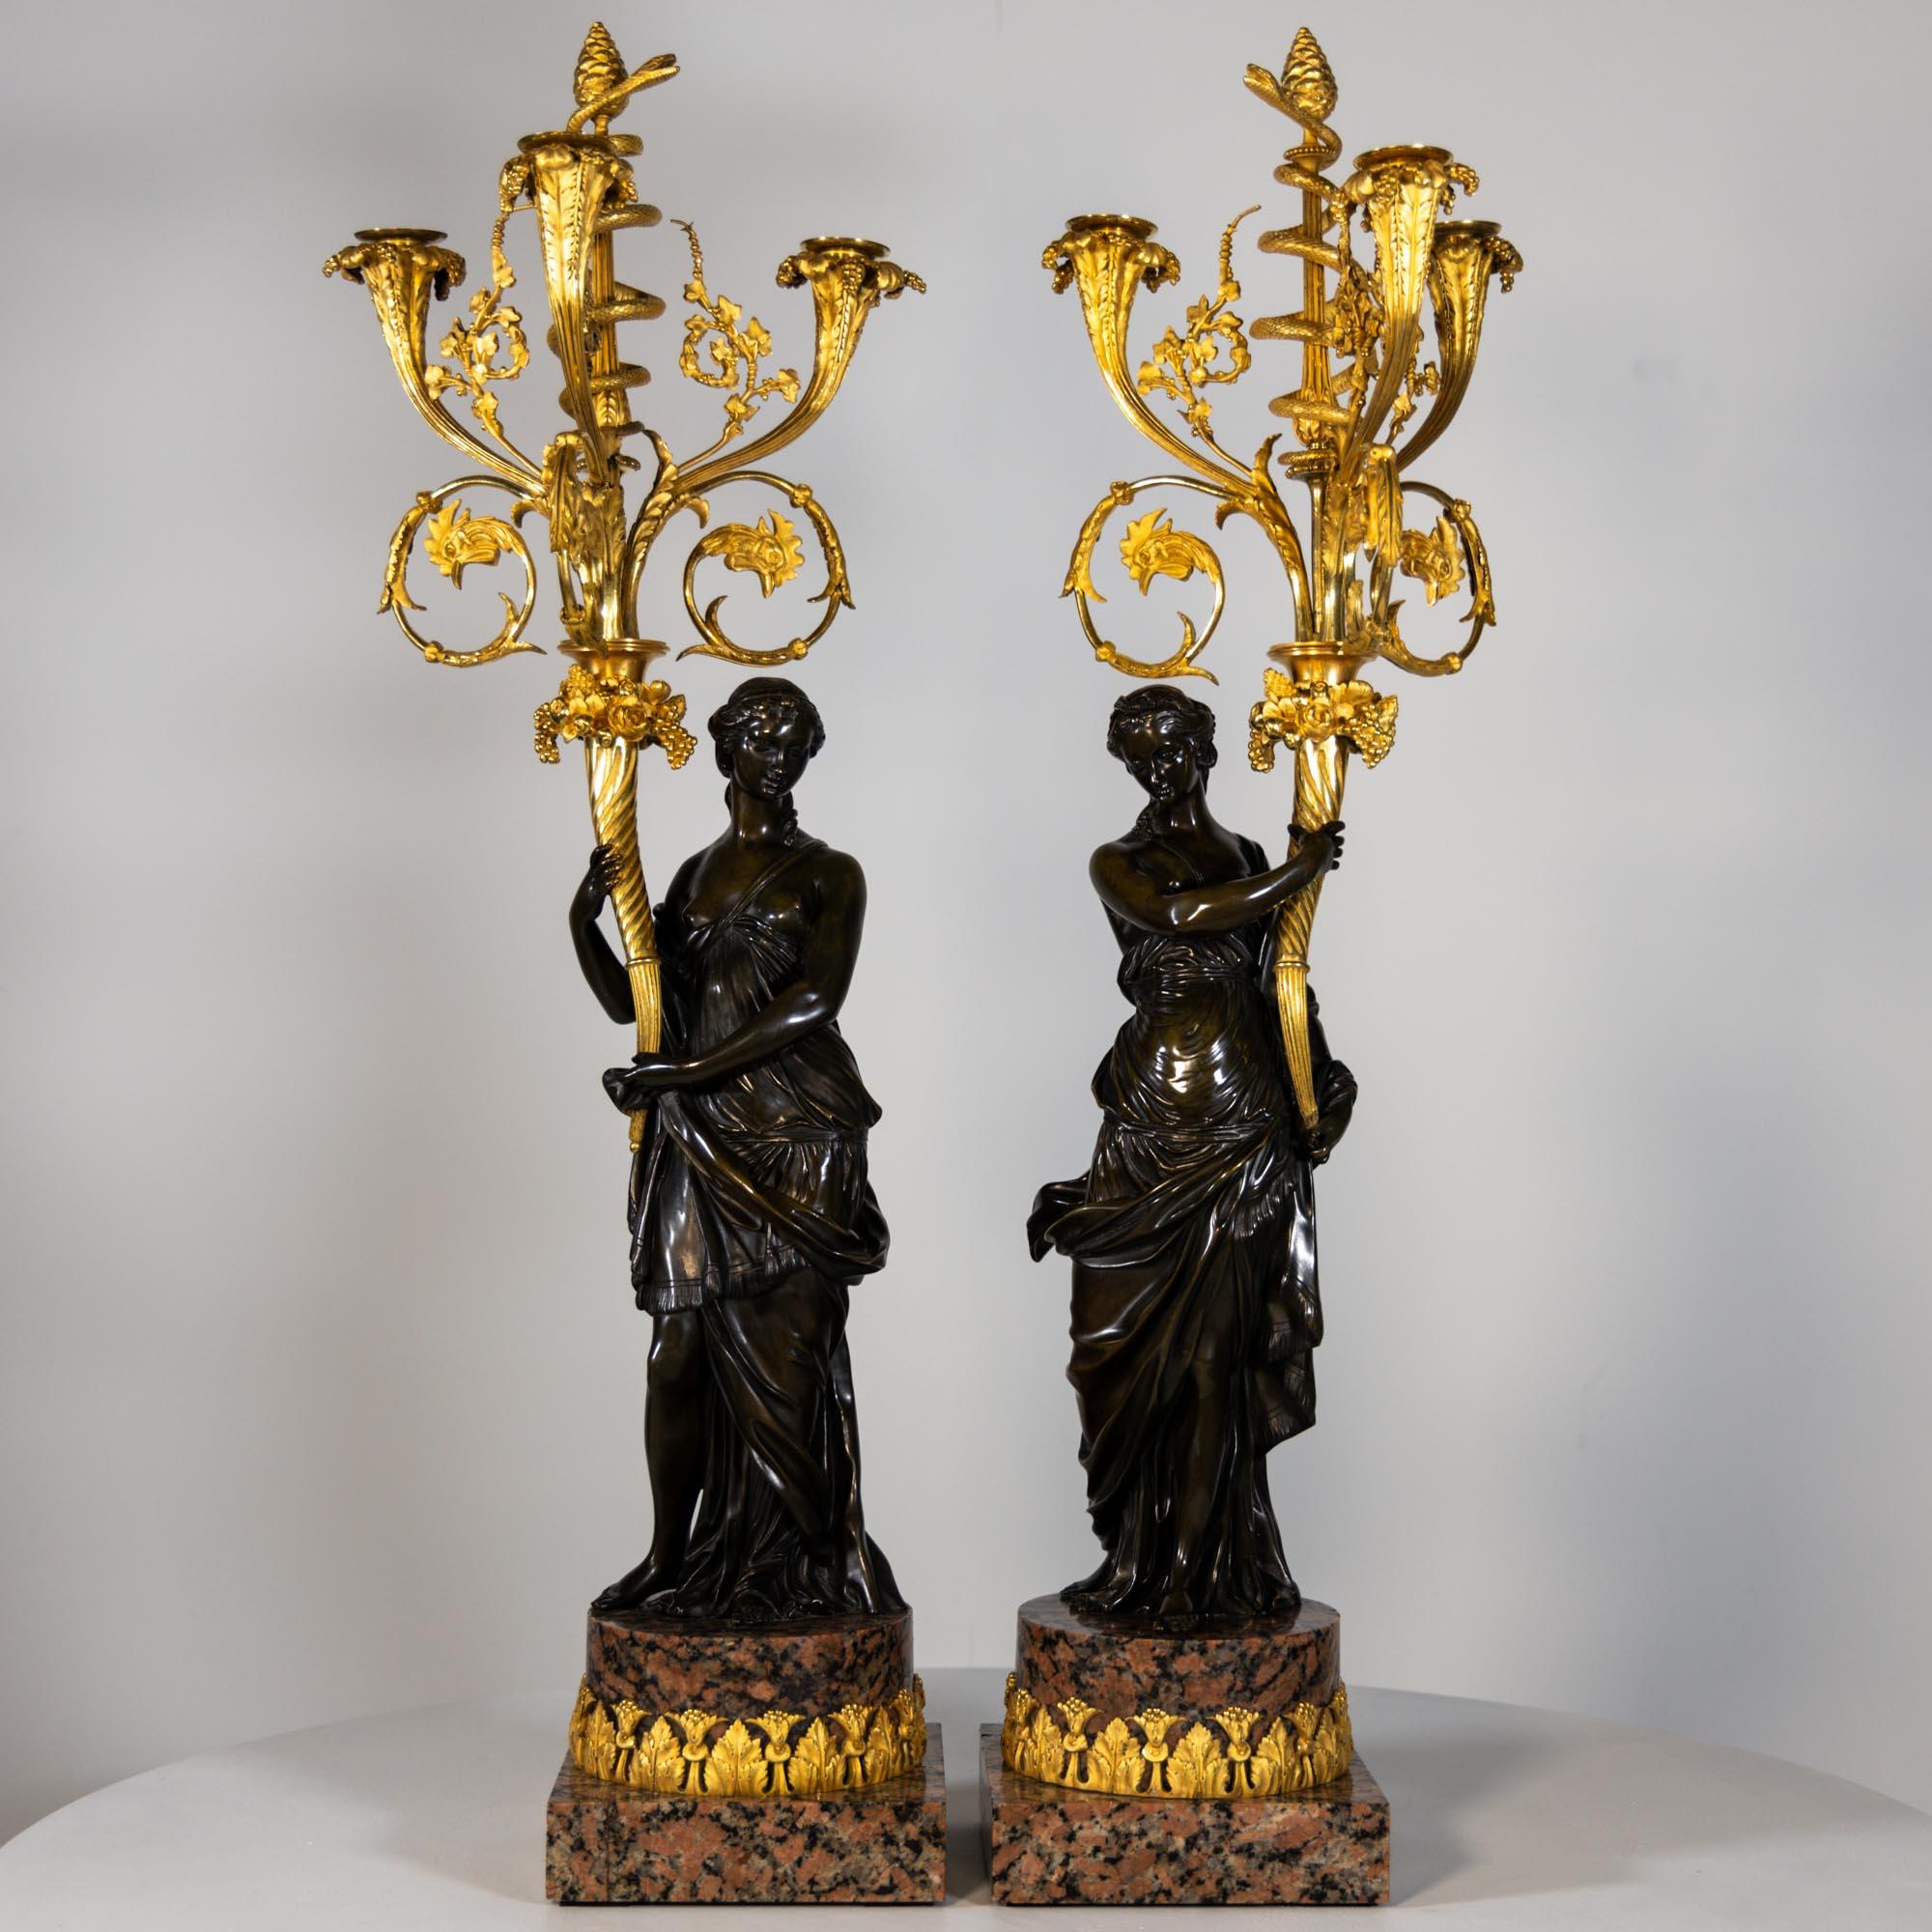 Ein Paar Kandelaber aus feuervergoldeter und brünierter Bronze. Die weiblichen Figuren sind in antiker Kleidung dargestellt und tragen Füllhörner, die sich zu ausladenden Leuchtern entwickeln und in einer spiralförmigen Schlange um den zentralen